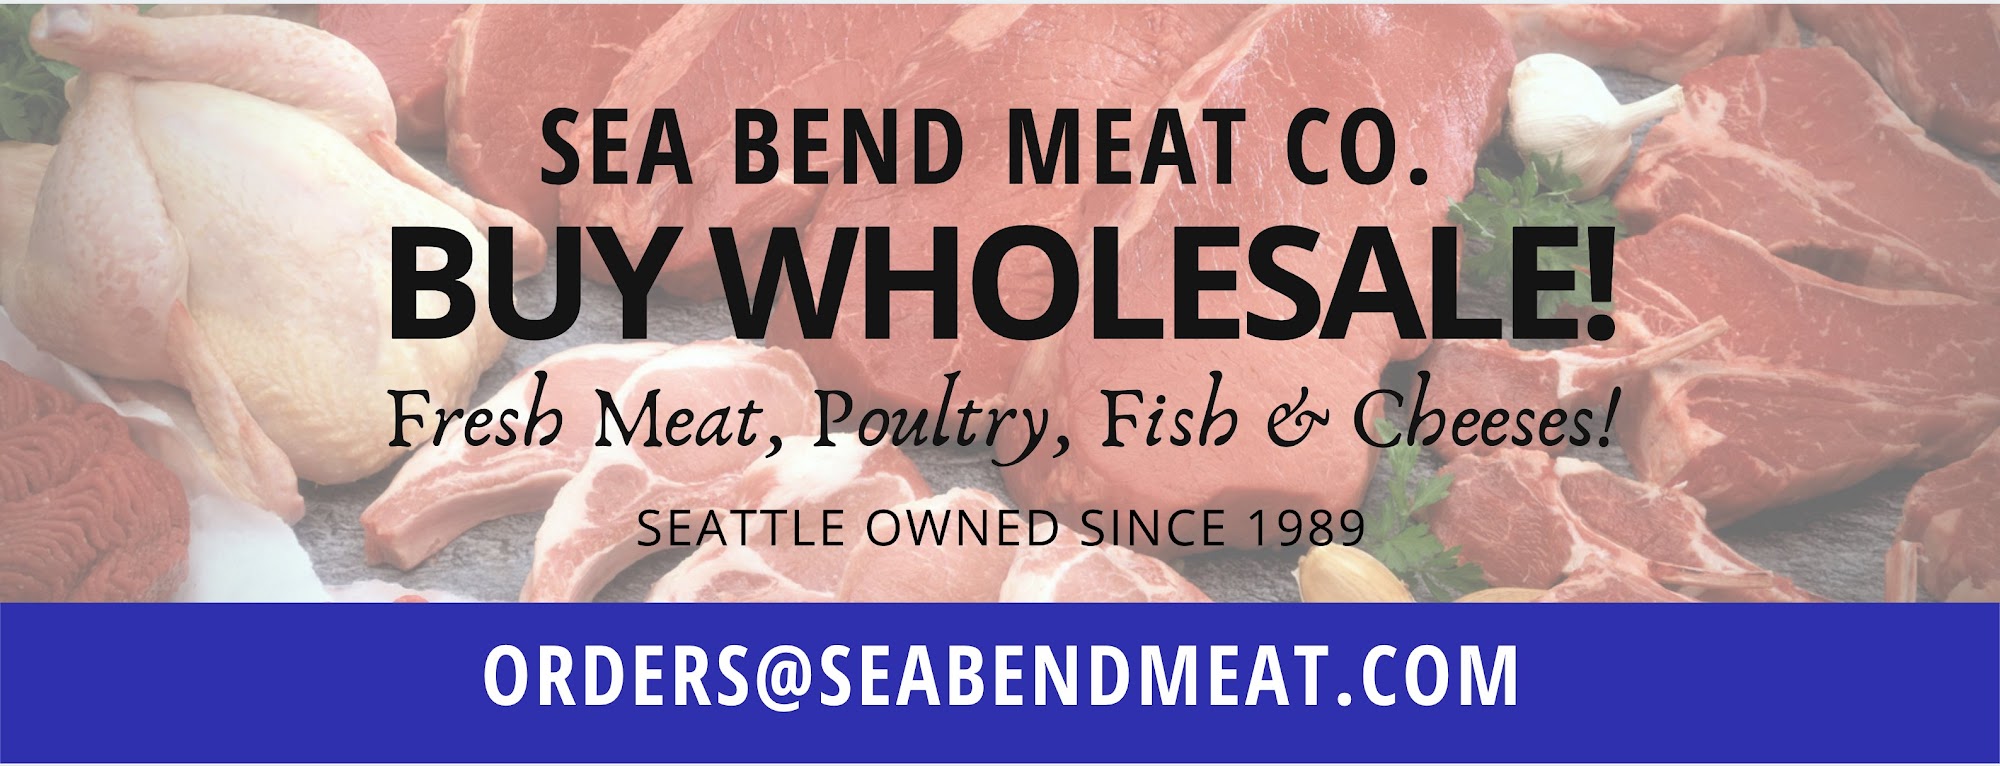 Sea Bend Meat Co